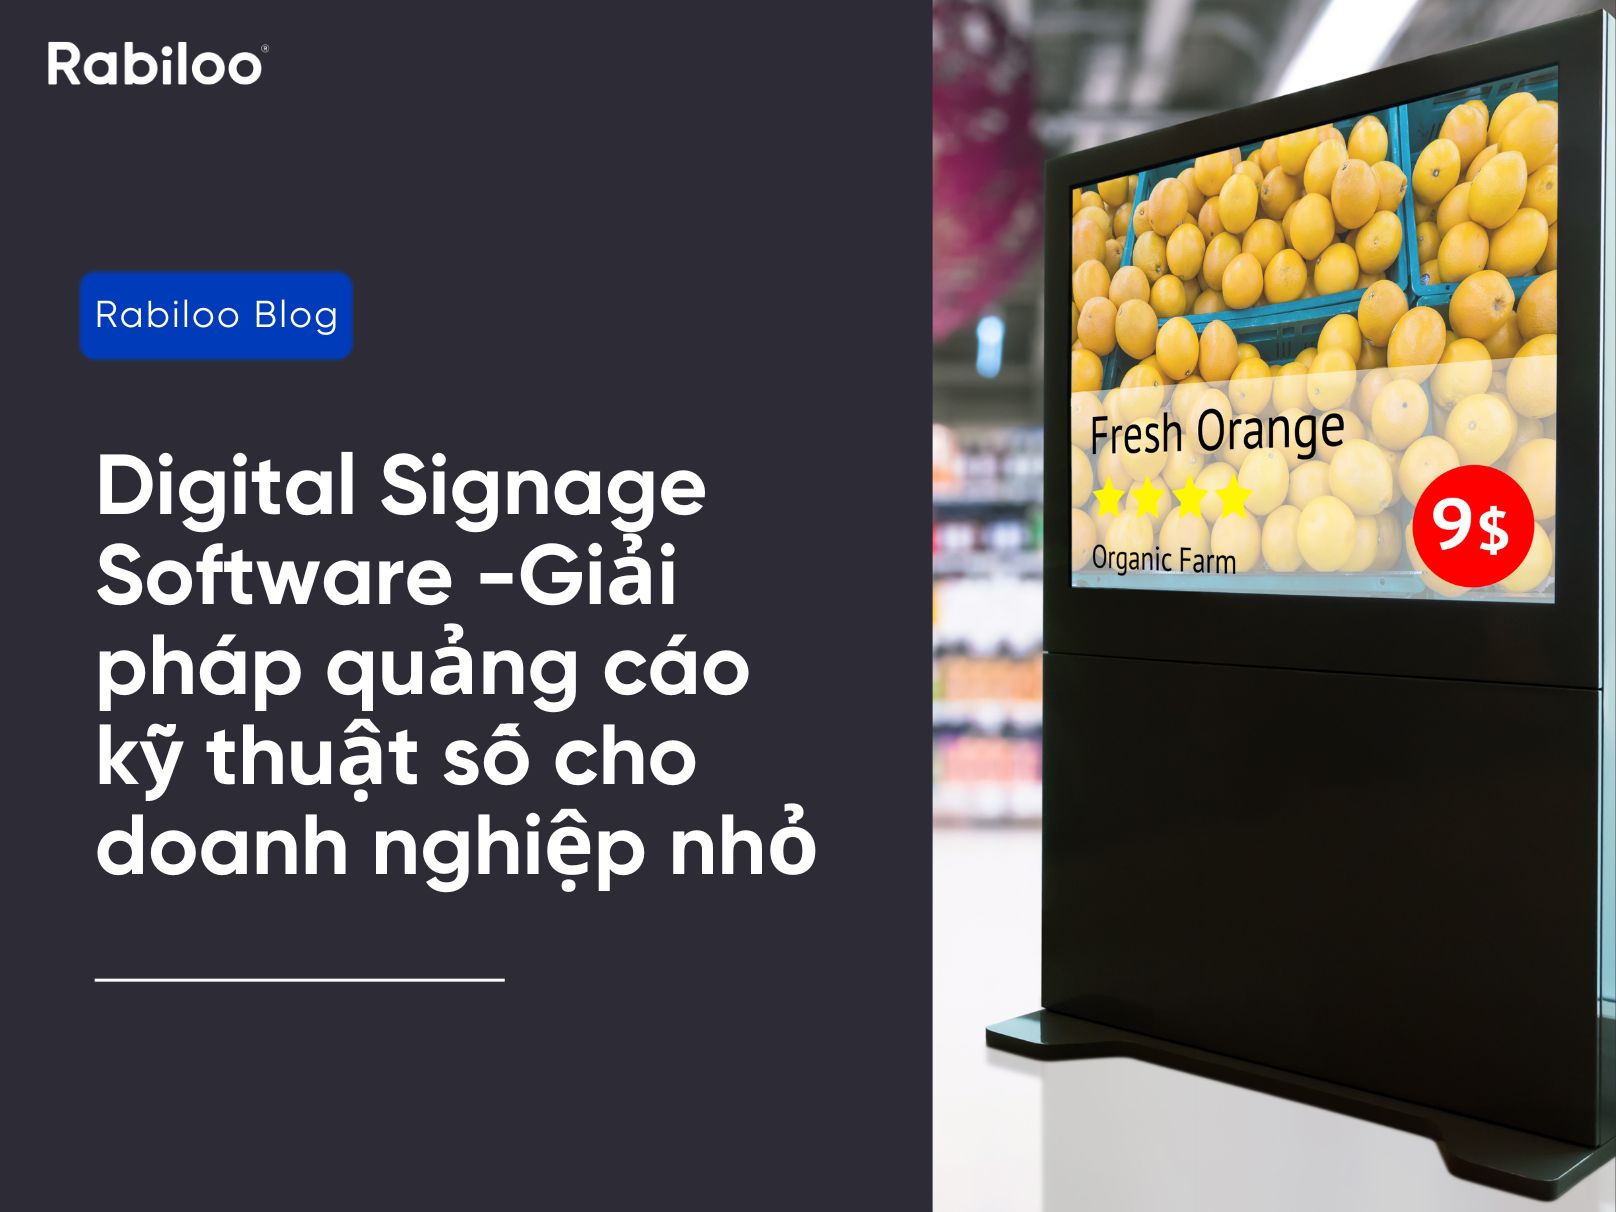 Digital Signage Software - Giải pháp quảng cáo kỹ thuật số cho doanh nghiệp nhỏ